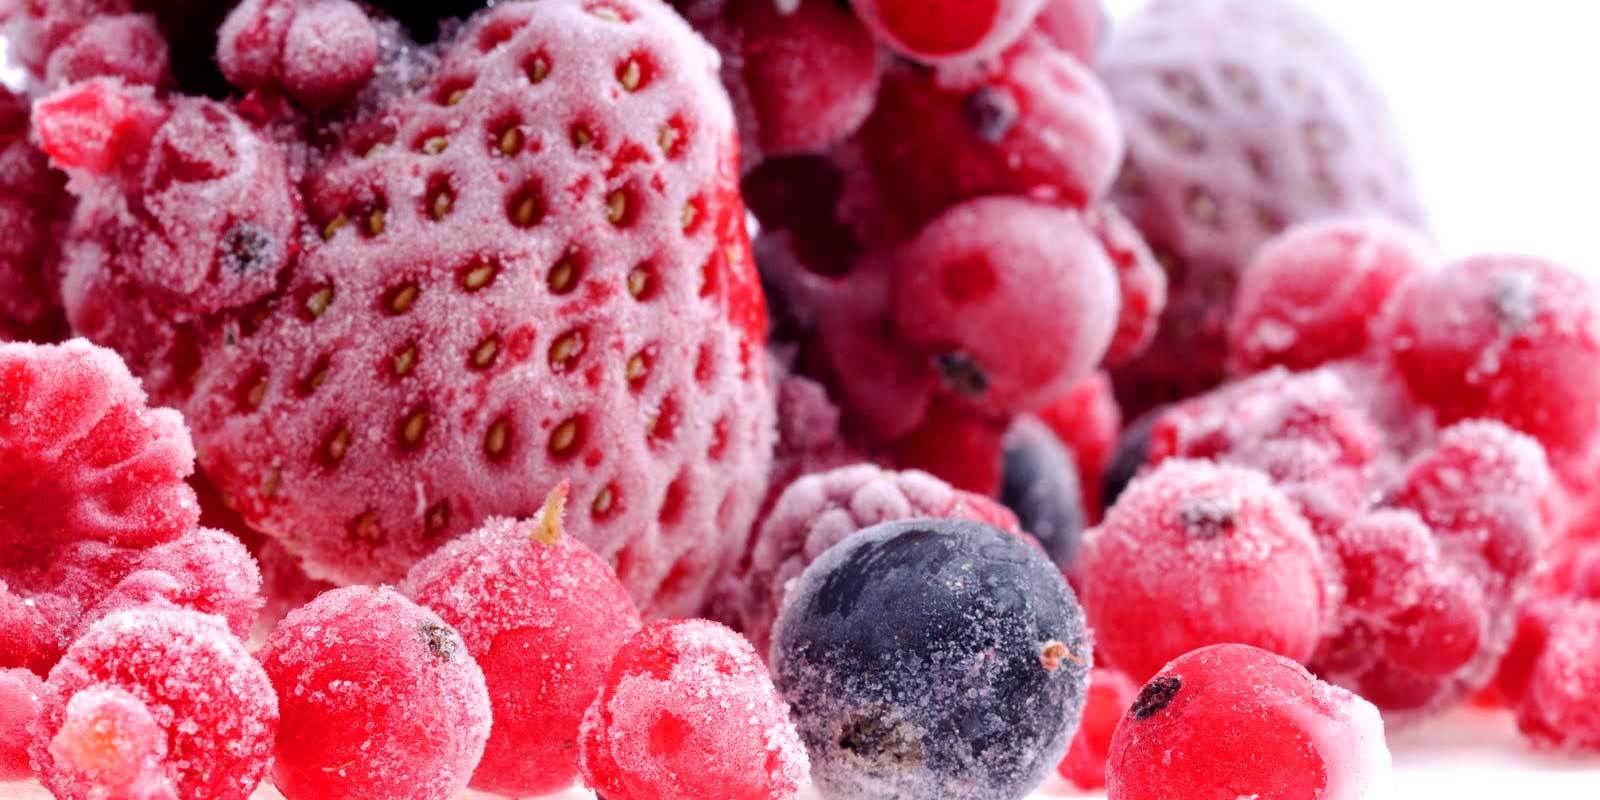 Frosne frugter og groentsager Uanset om det er til hjemmelavet is, dine egne syltetoejskreationer eller en laekker kage med frossen frugt, sa har du de rigtige maengder pa lager. Det kraever ingen magi at spontant behandle frossen frugt.